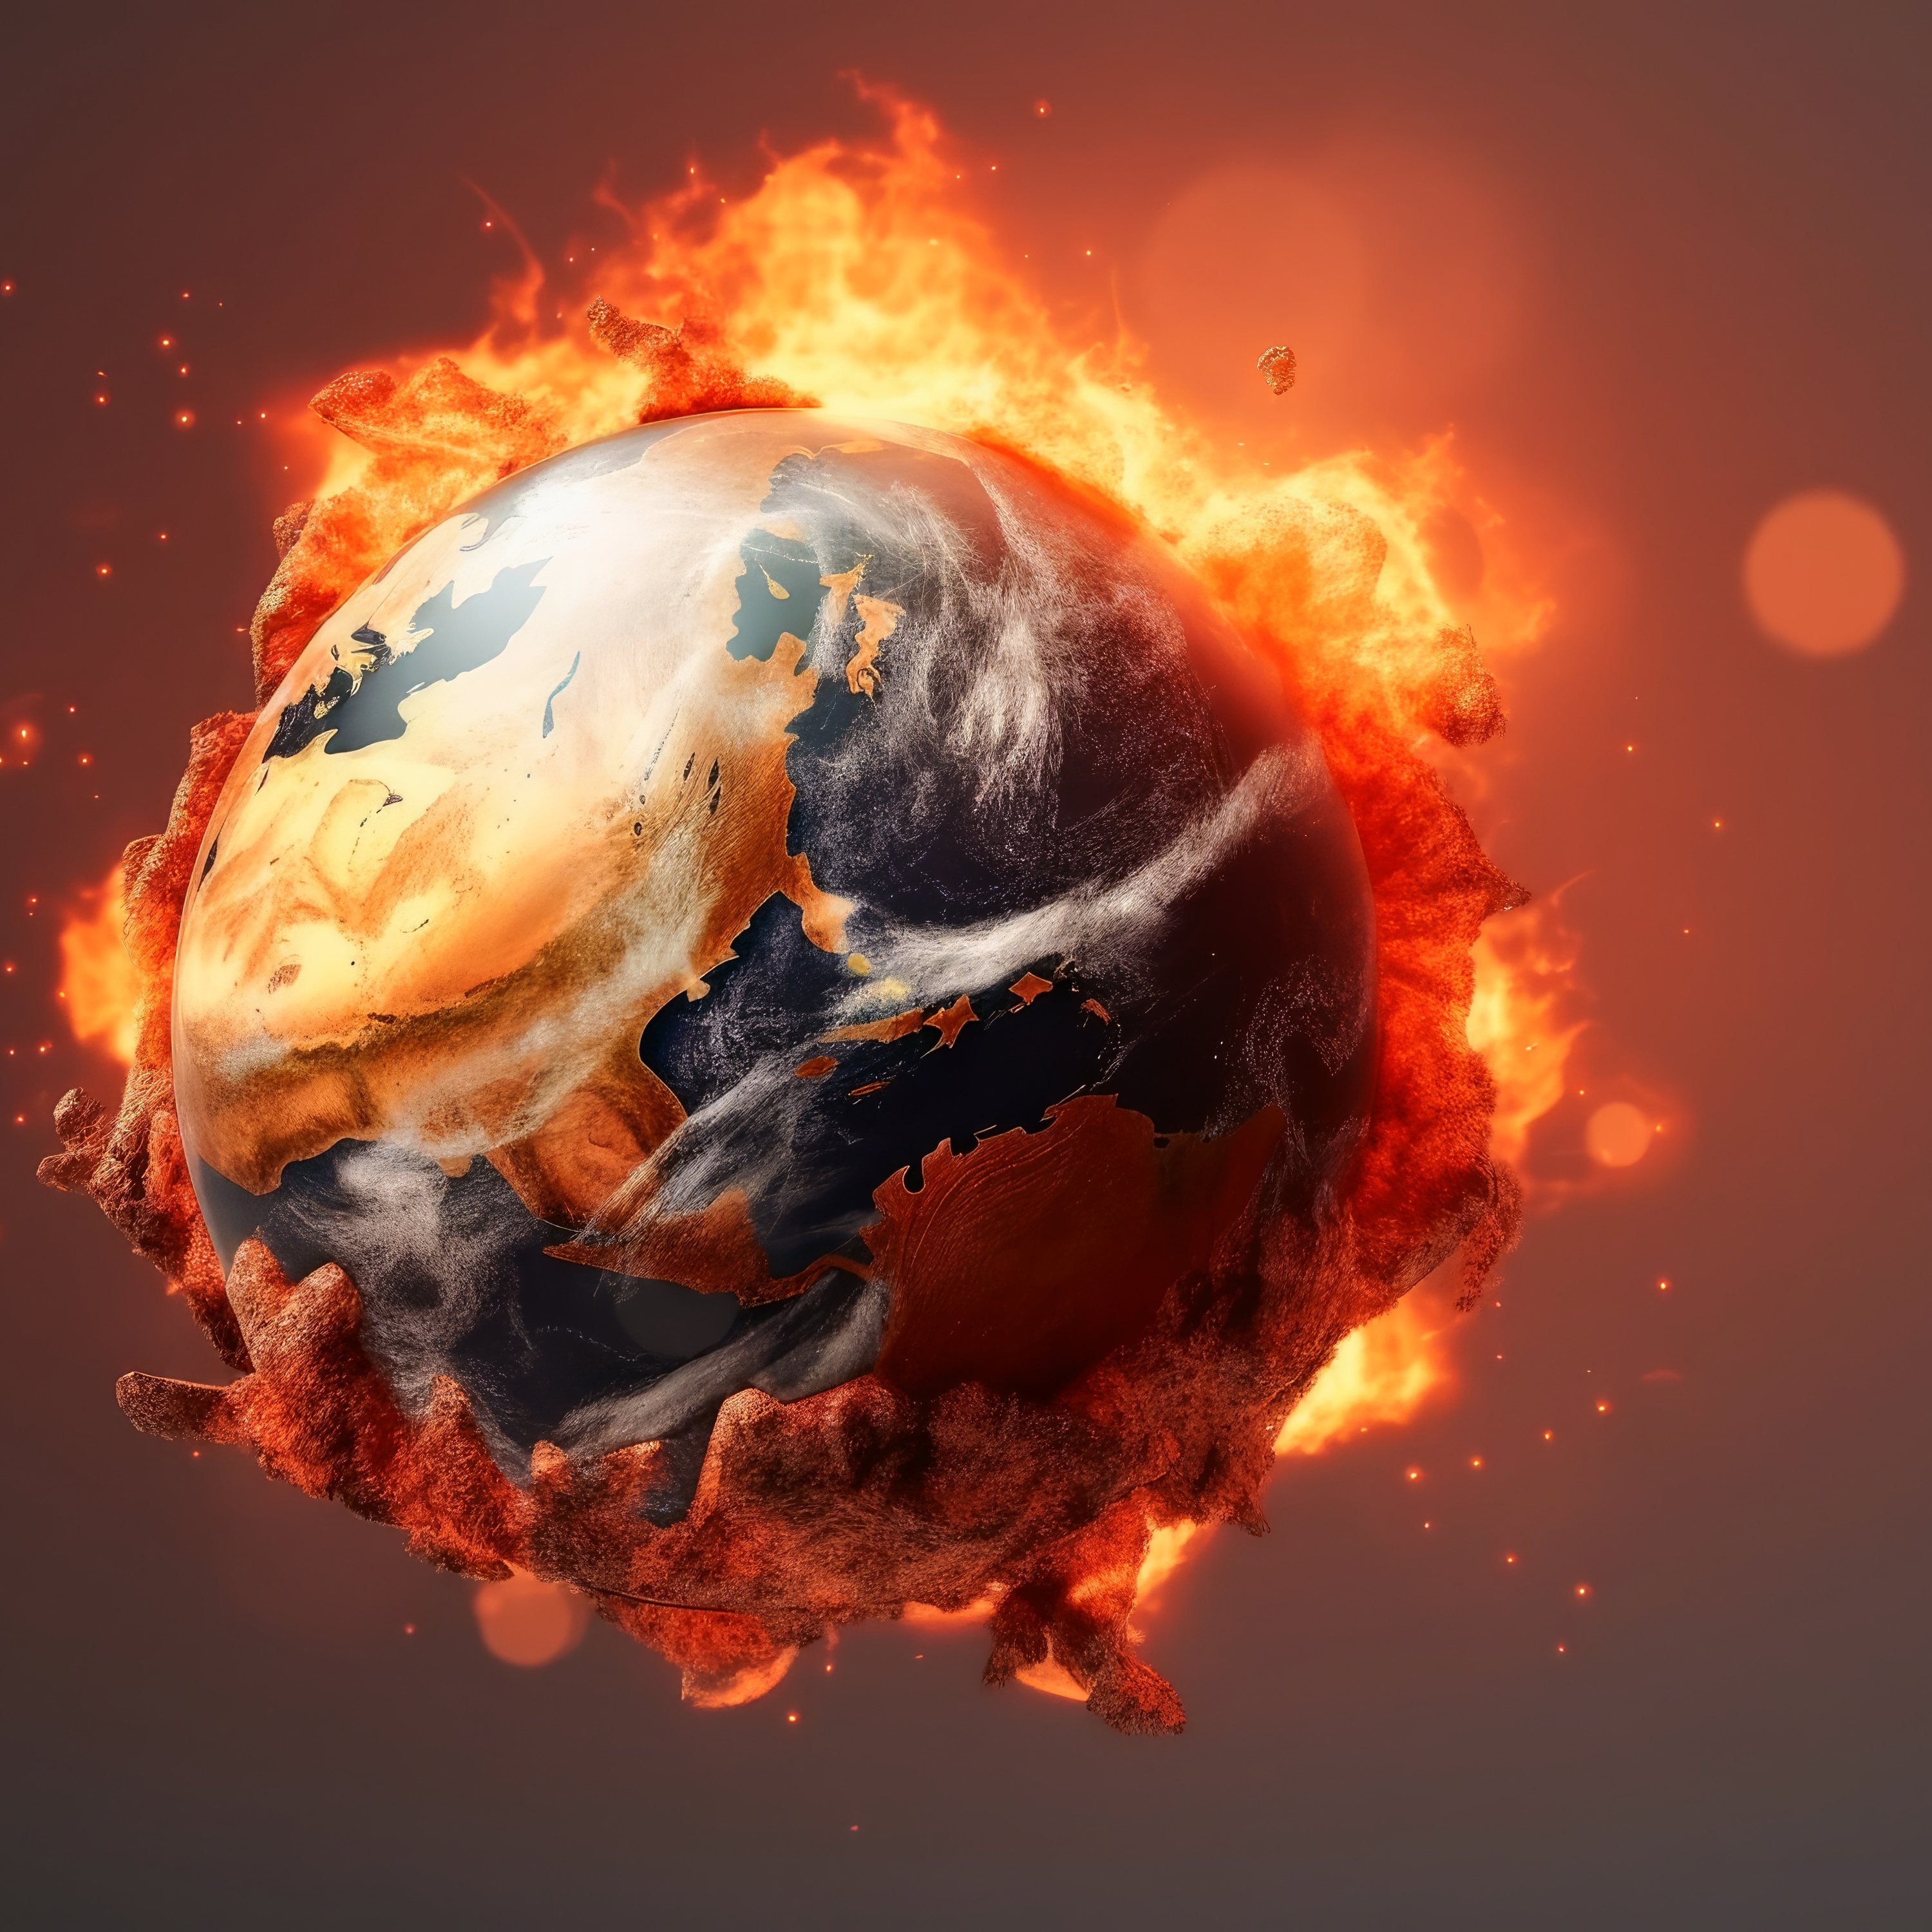 Is “global boiling” ‘n oordrywing?